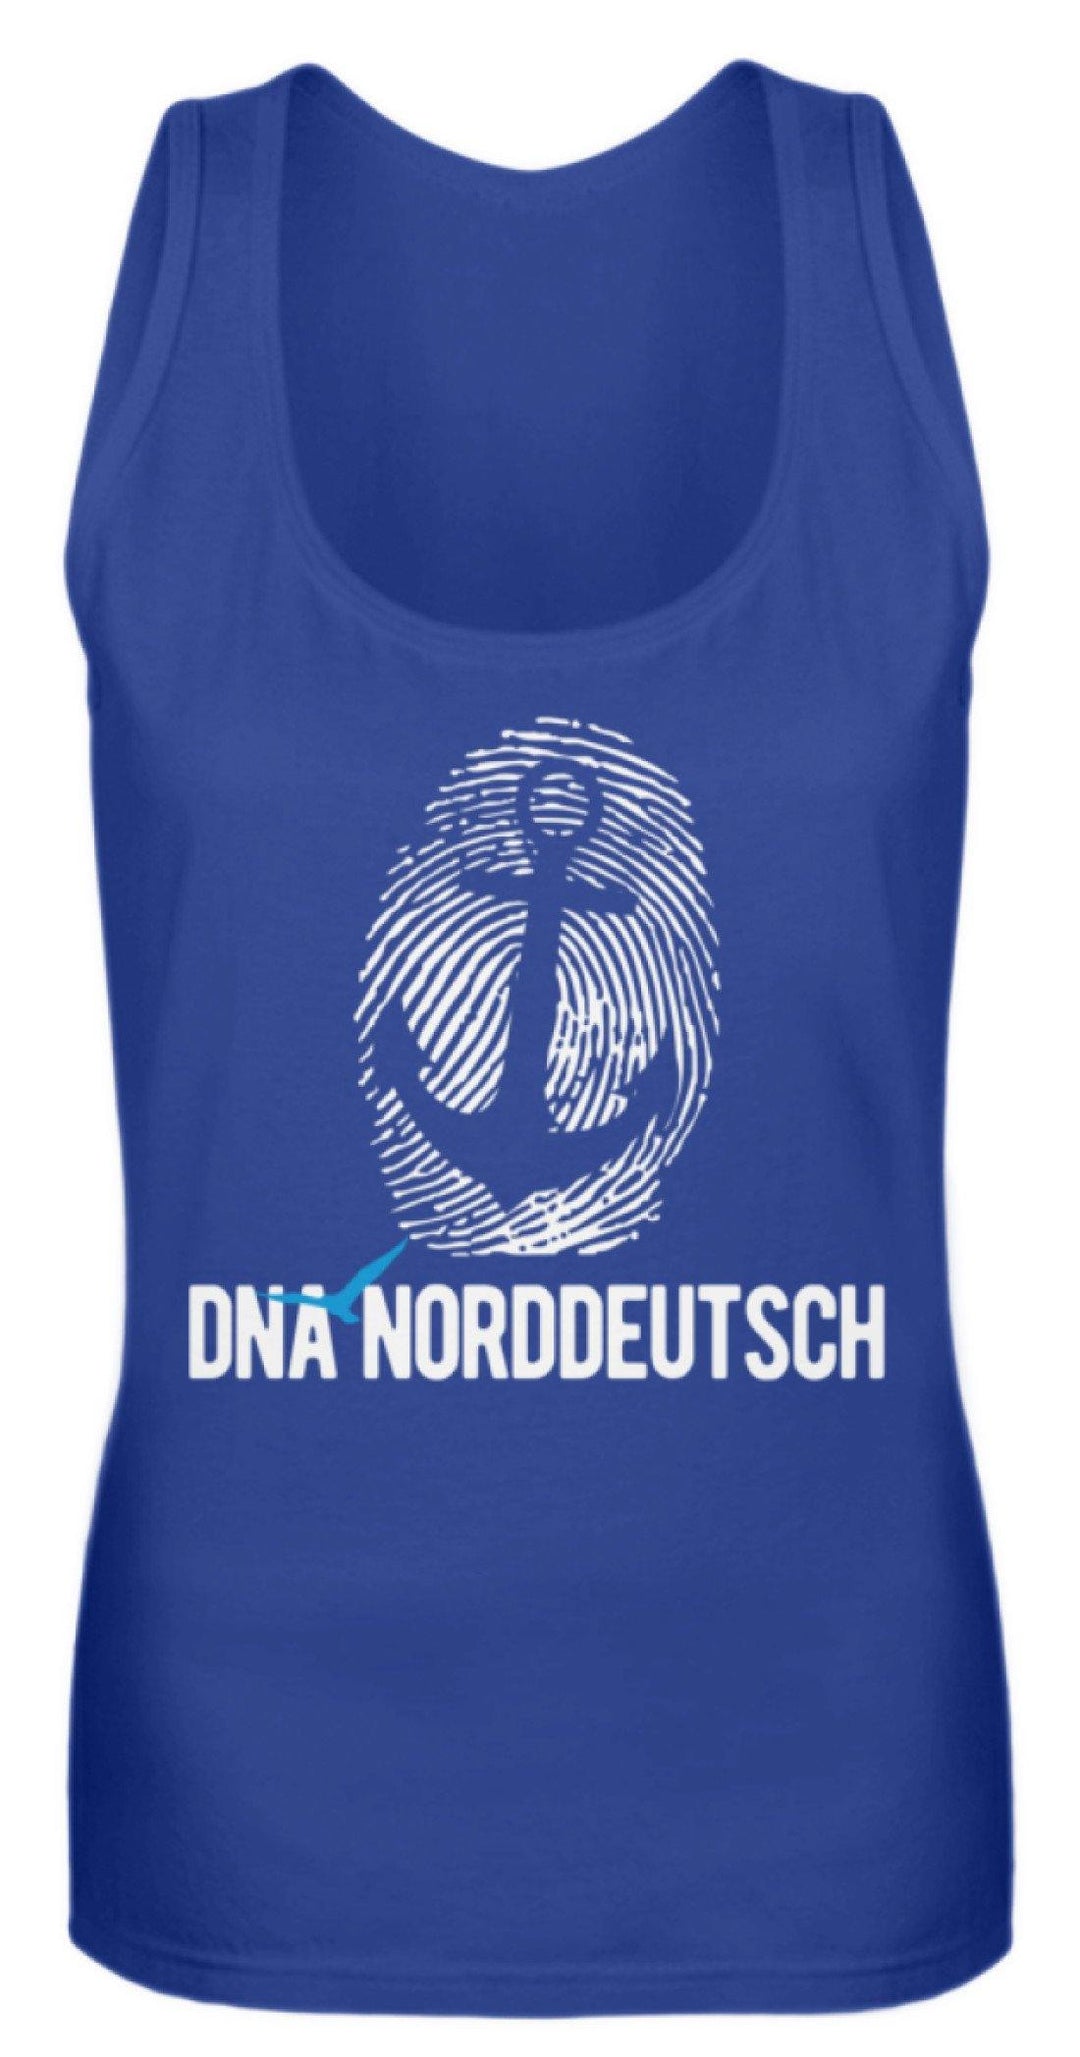 DNA Norddeutsch  - Frauen Tanktop - Words on Shirts Sag es mit dem Mittelfinger Shirts Hoodies Sweatshirt Taschen Gymsack Spruch Sprüche Statement